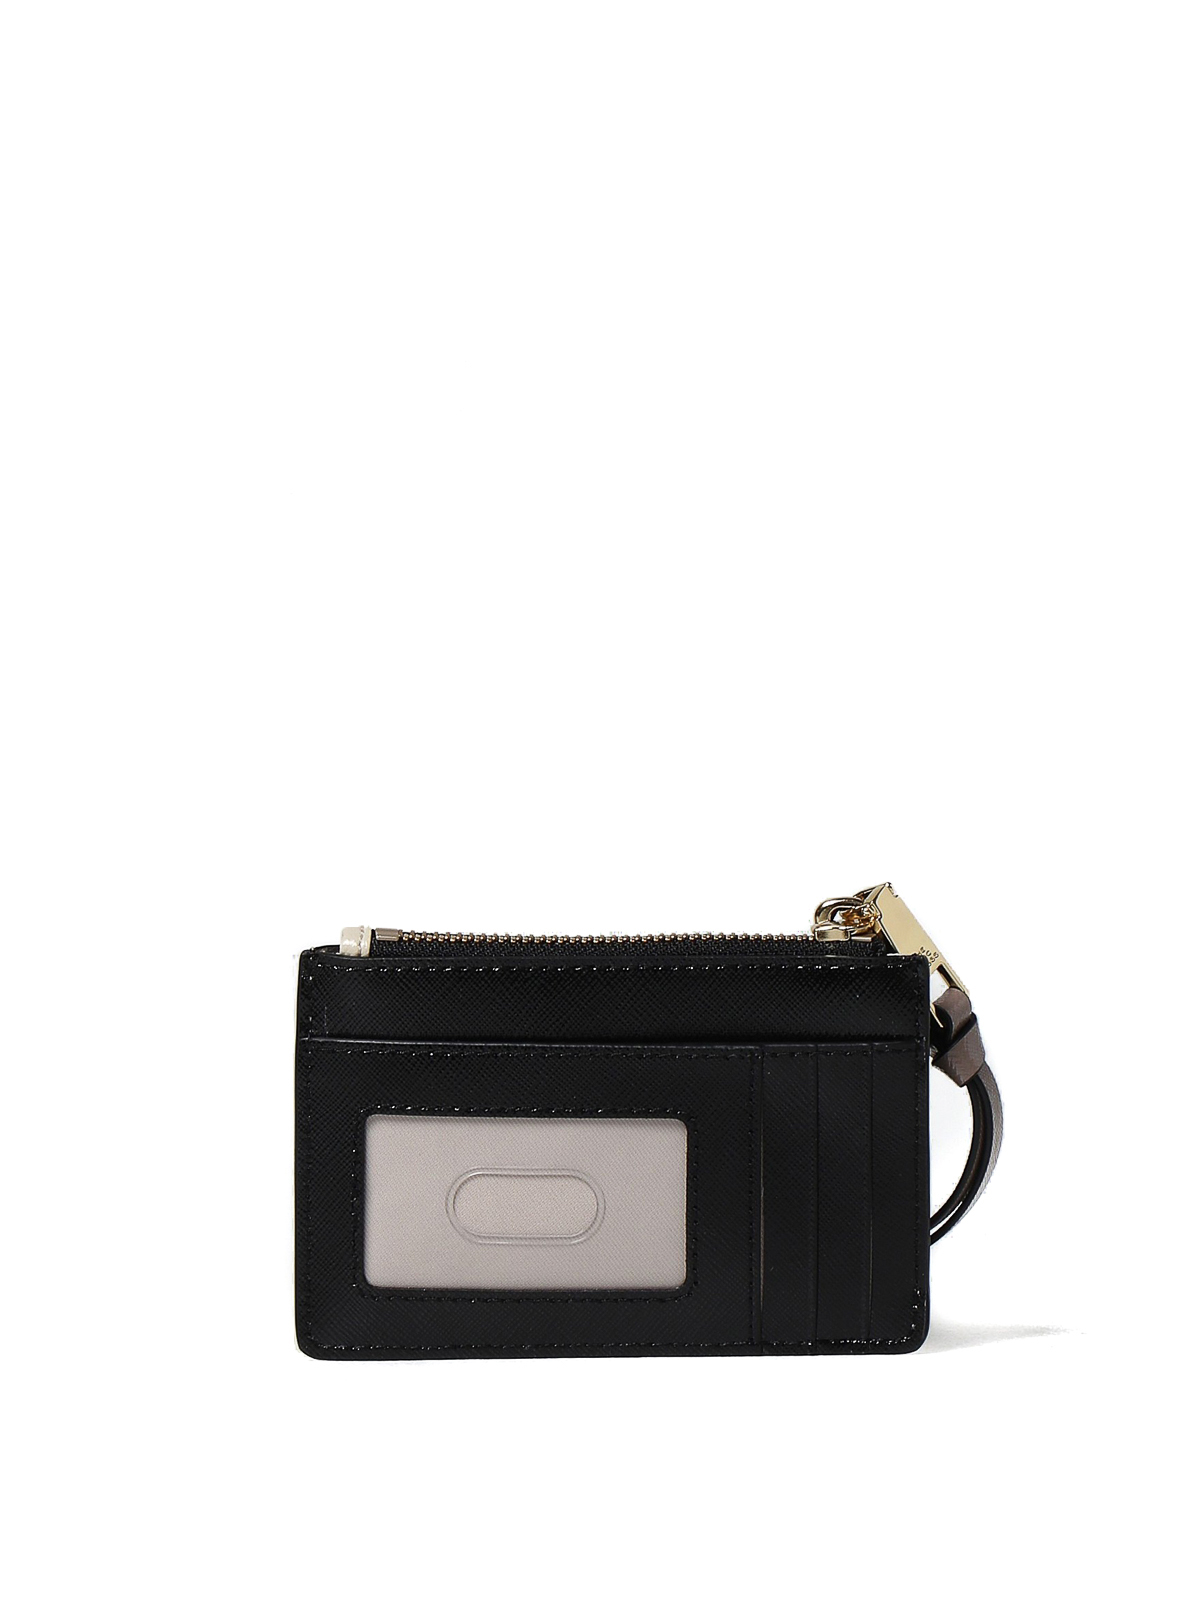 Marc Jacobs Taschen, Portemonnaies & Uhren